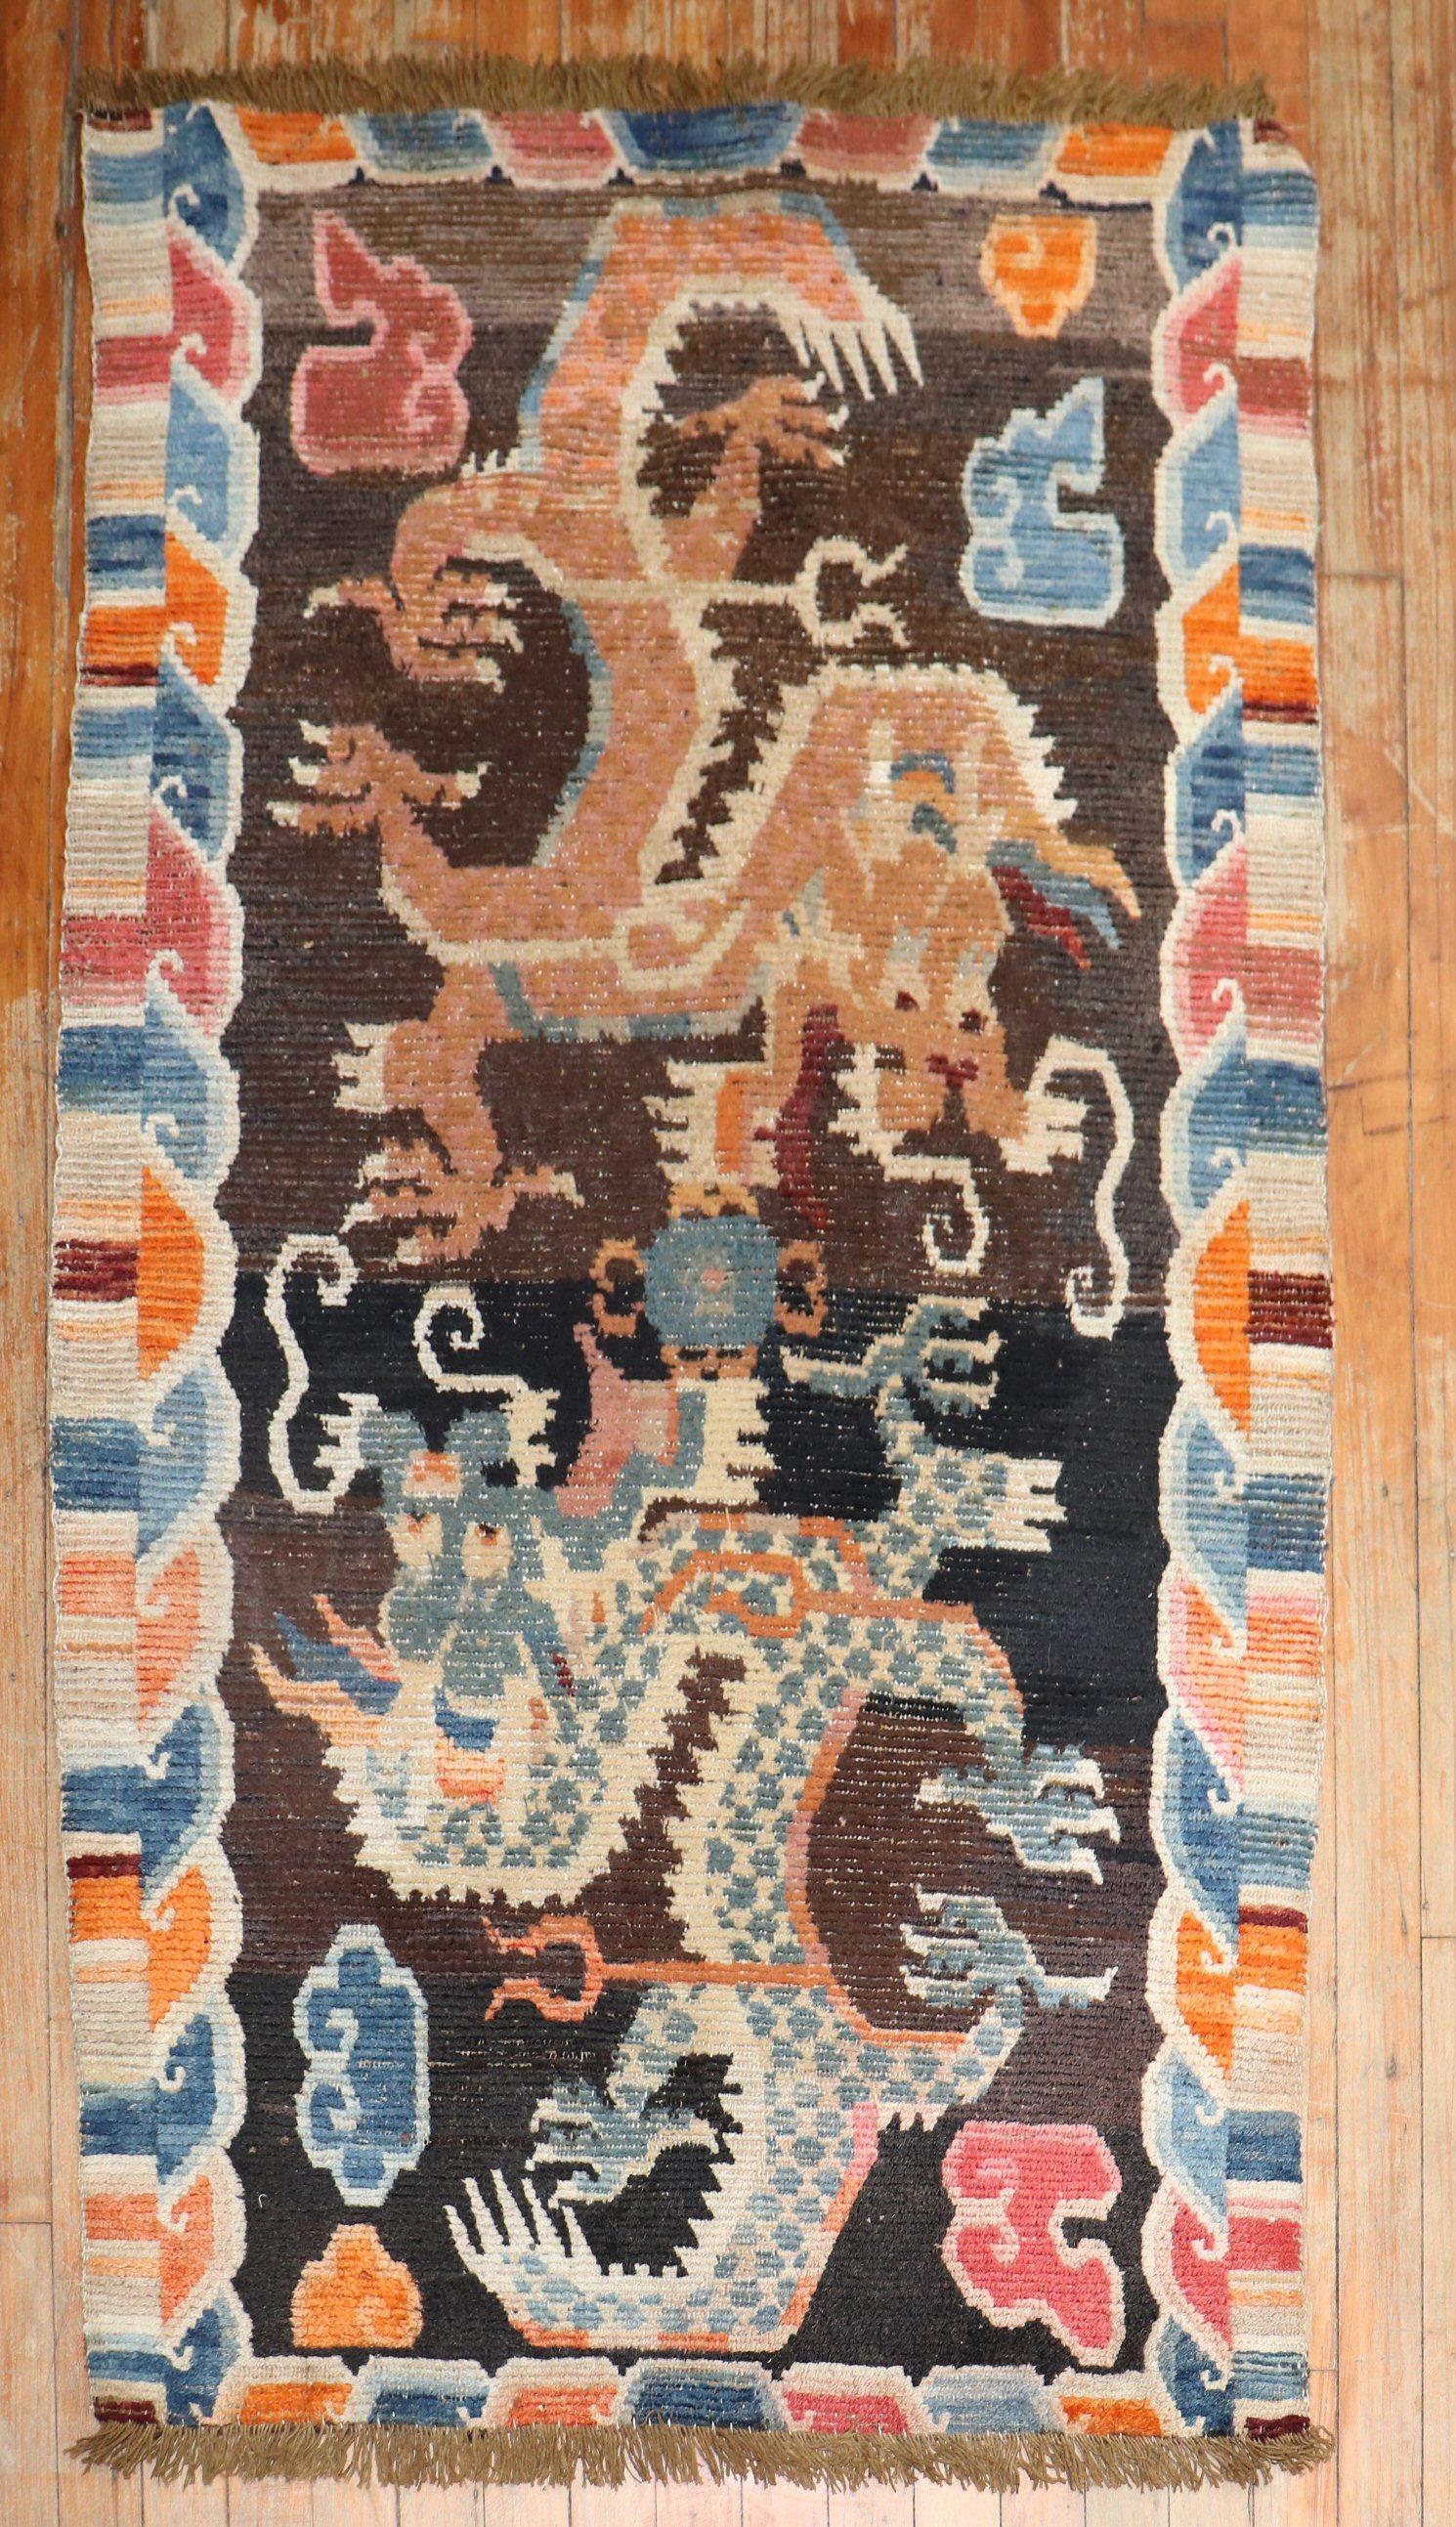 Tapis tibétain du 1er quart du 20ème siècle avec un motif de dragon à grande échelle.
La laine est douce, la texture et la patine sont fabuleuses. Can peut également être utilisé pour une suspension murale.

Mesures : 2'9